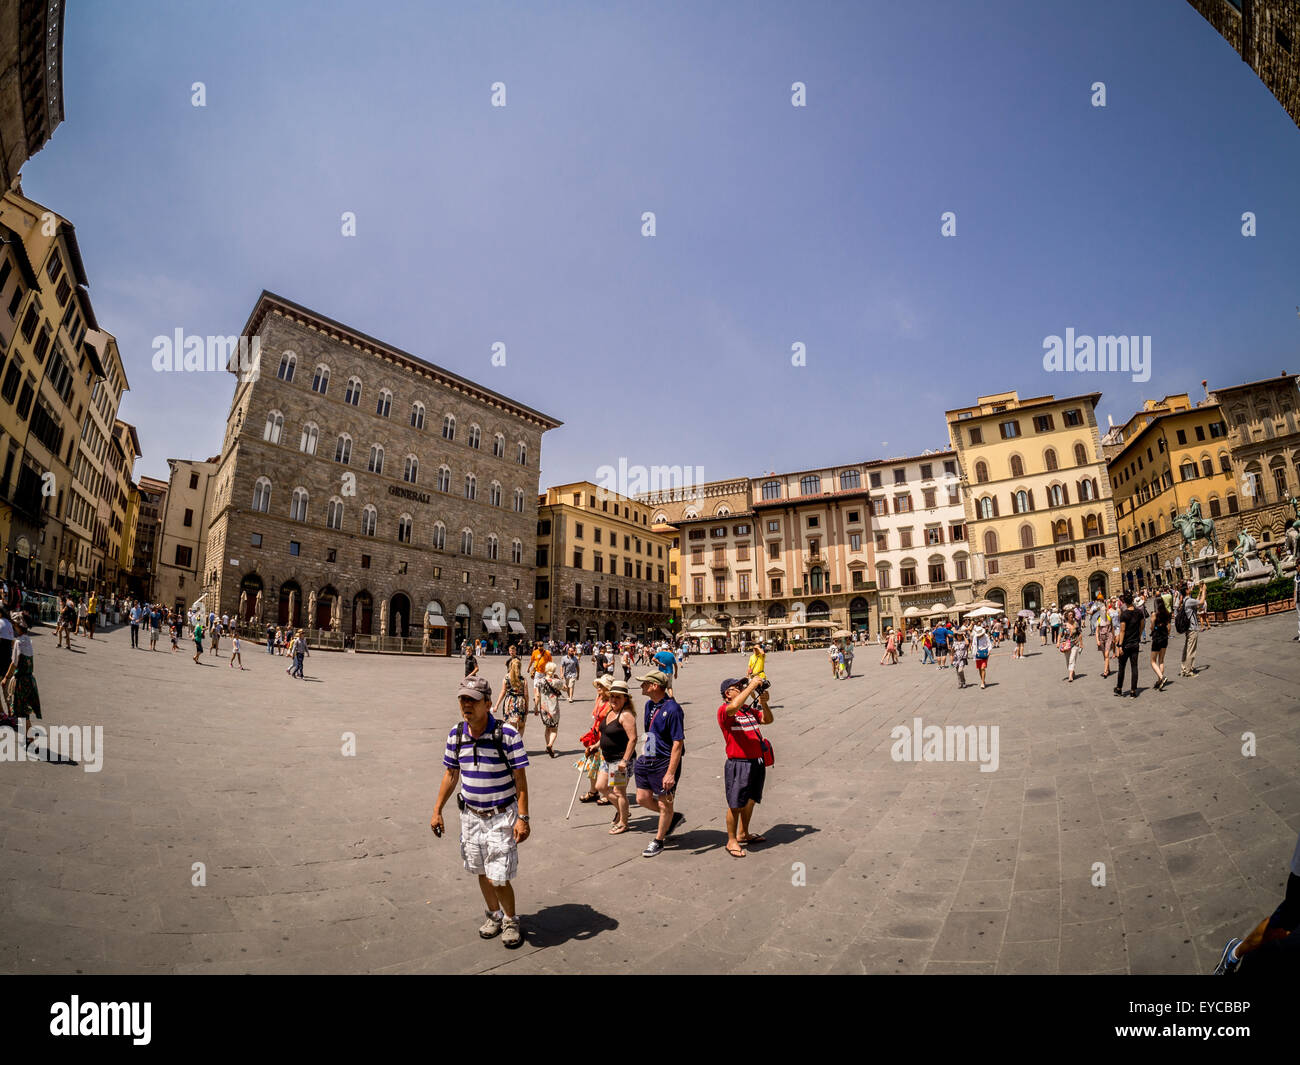 Fisheye-Objektiv Schuss der Piazza della Signoria in Florenz, Italien Stockfoto